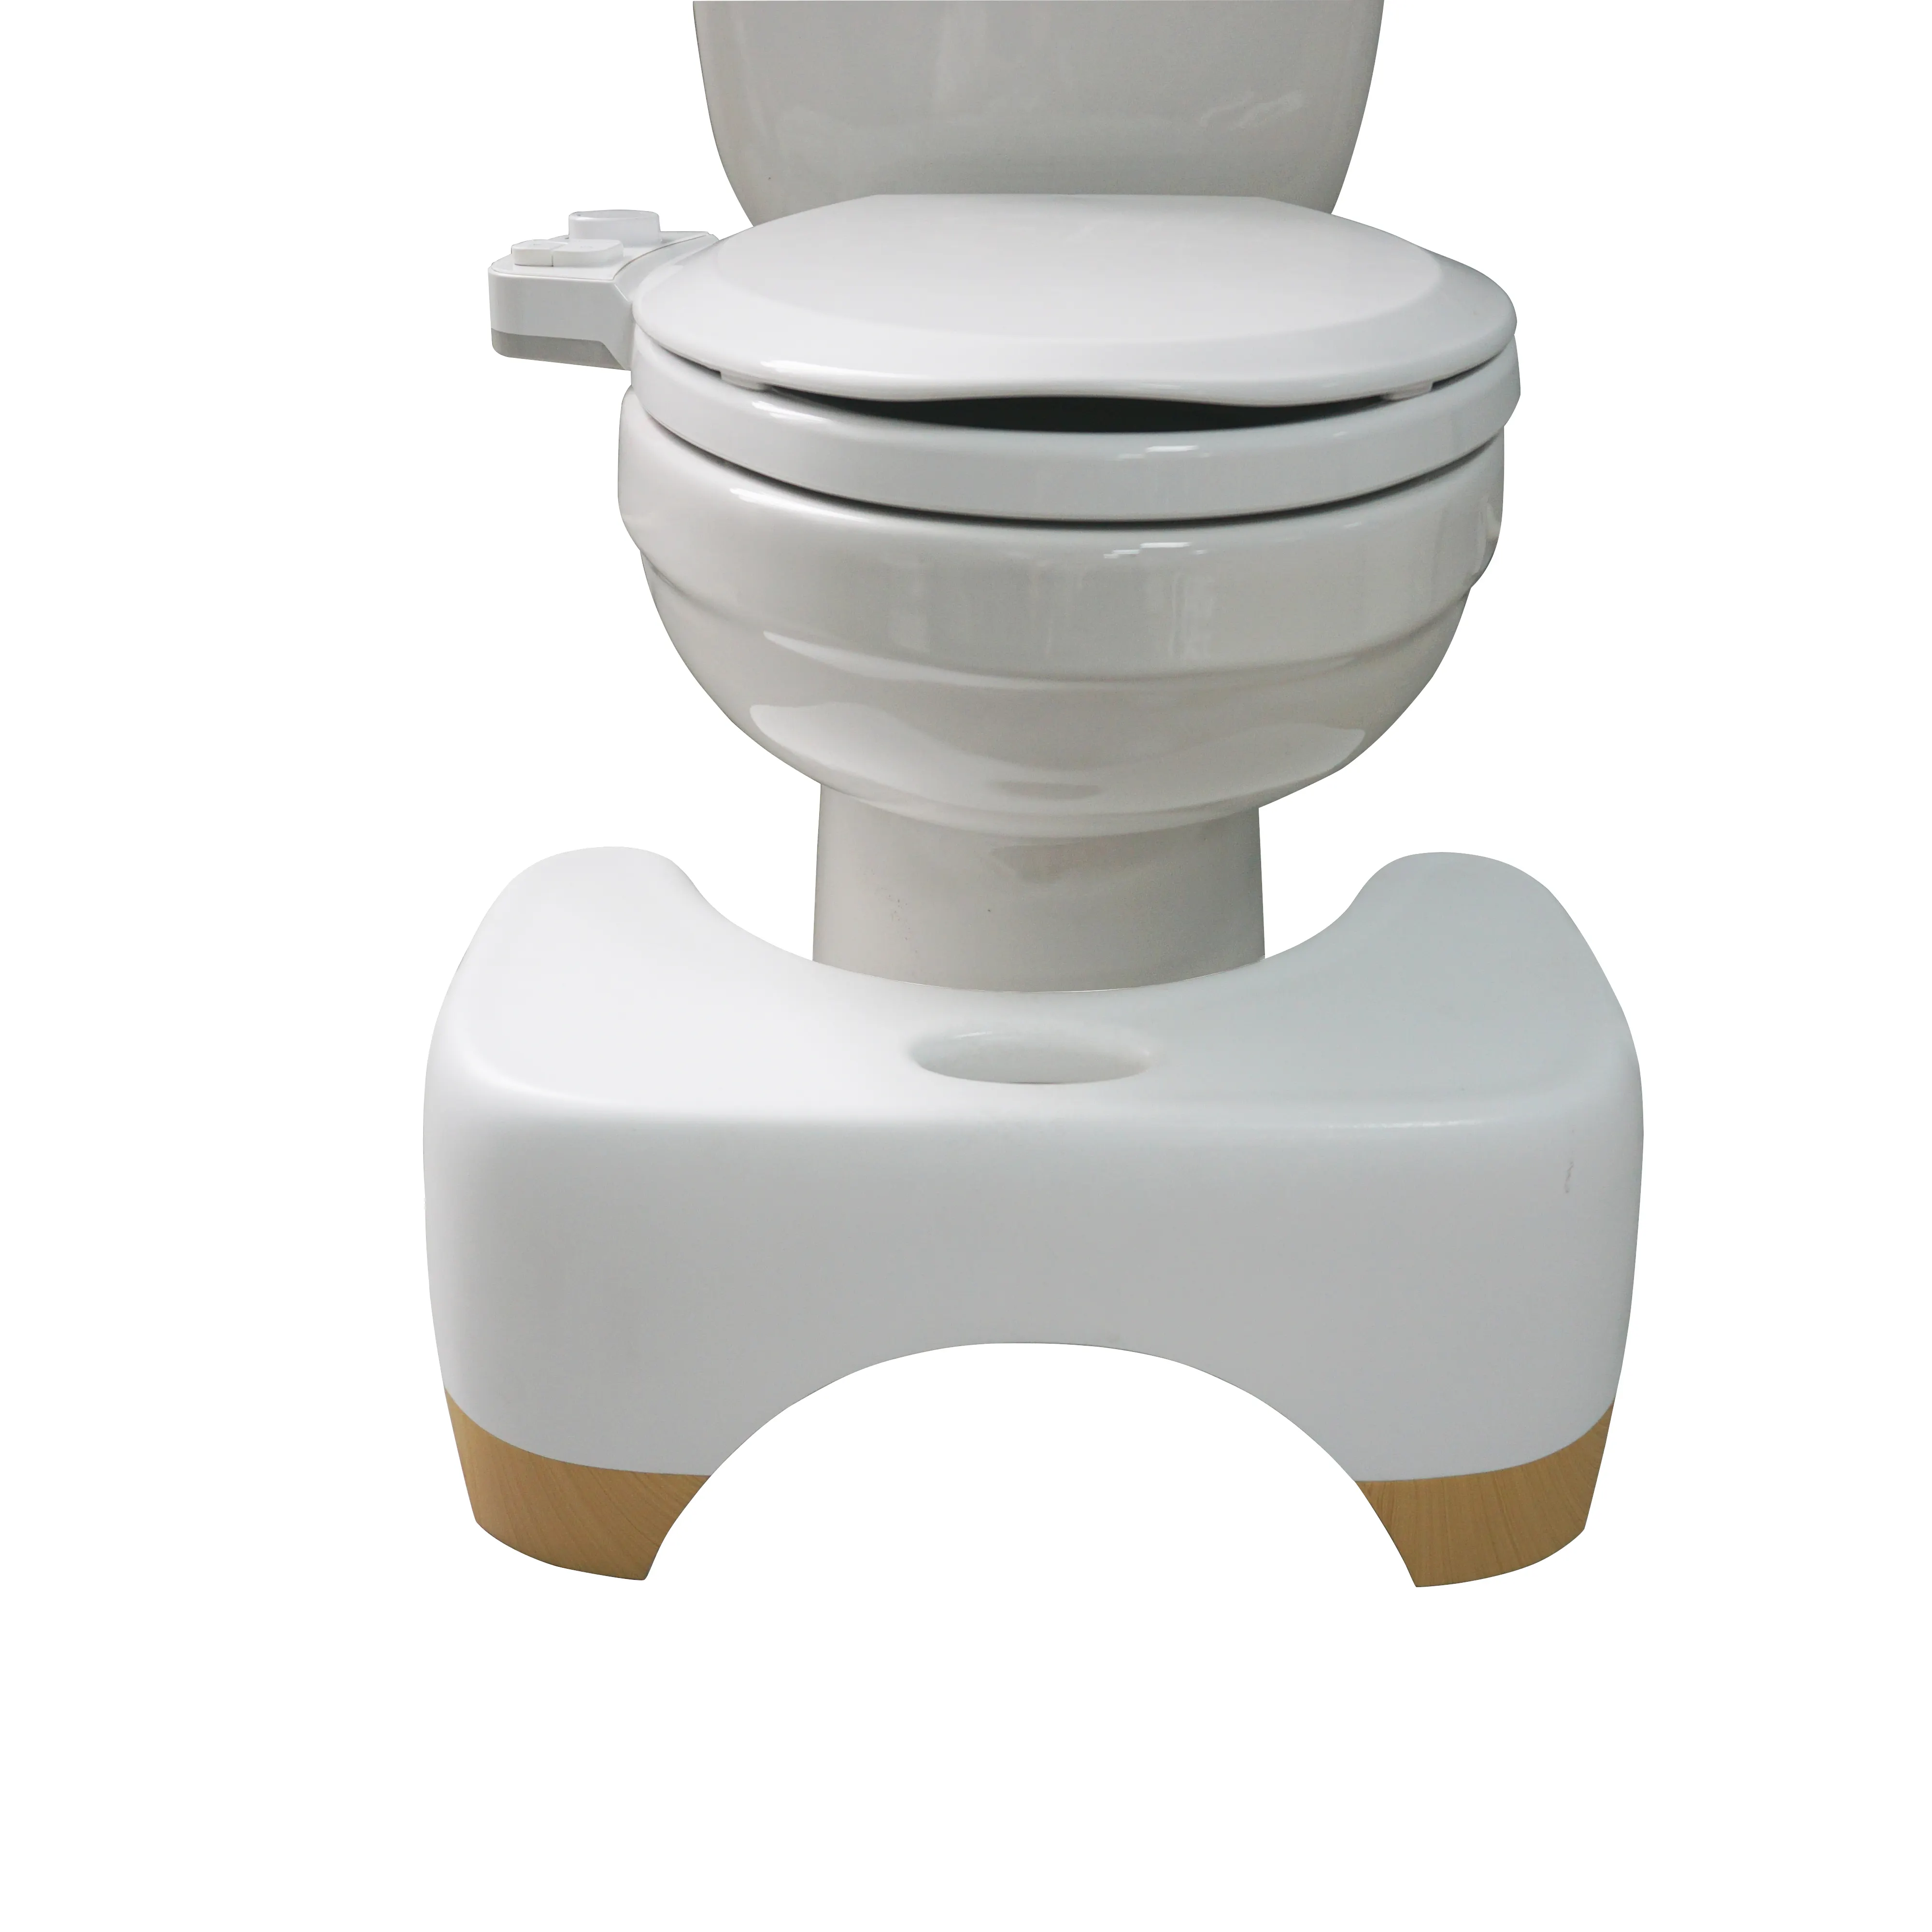 शौचालय दस्त से बना उच्च गुणवत्ता वाले कच्चे सामग्री गैर पर्ची रंग अनुकूलित किया जा सकता